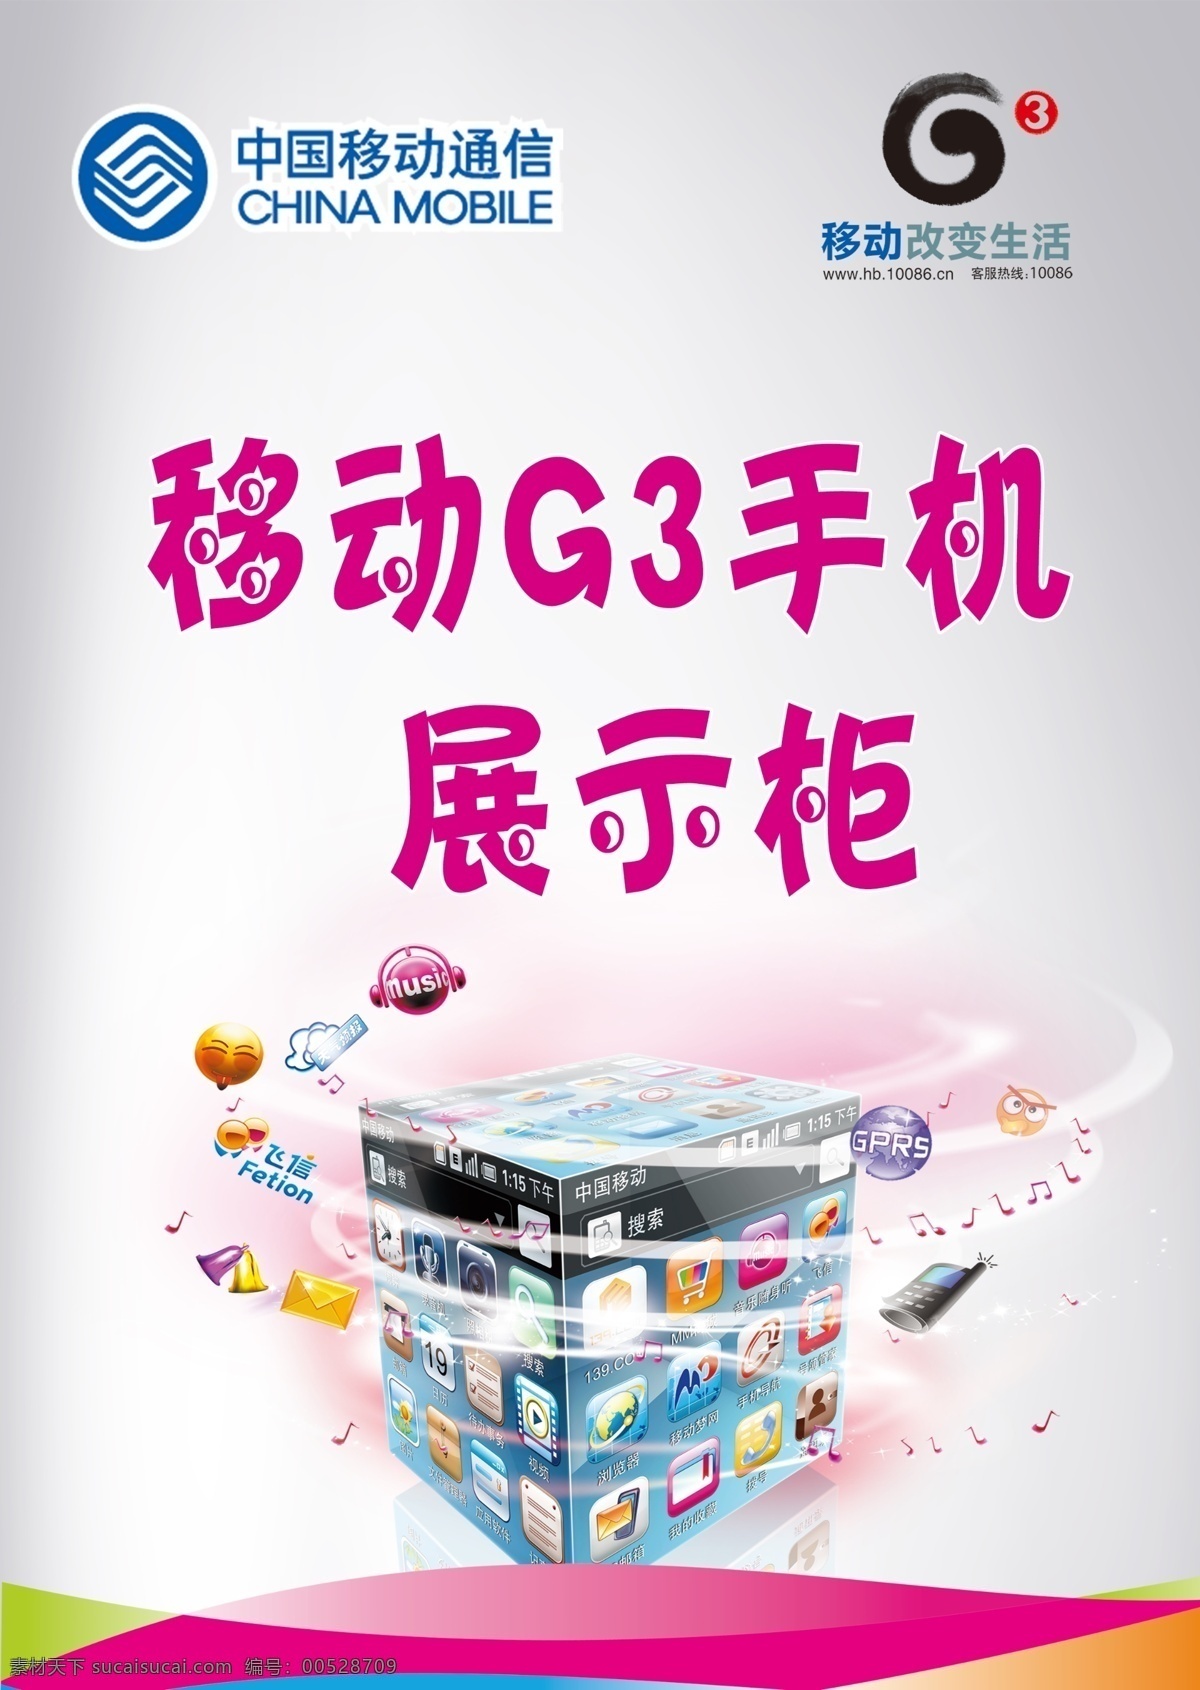 g3 背景 单页 广告设计模板 魔方 宣传单 移动 手机 展示柜 海报 中国移动 移动通信 展板 g3手机 应用图标 移动改变生活 源文件 海报背景图